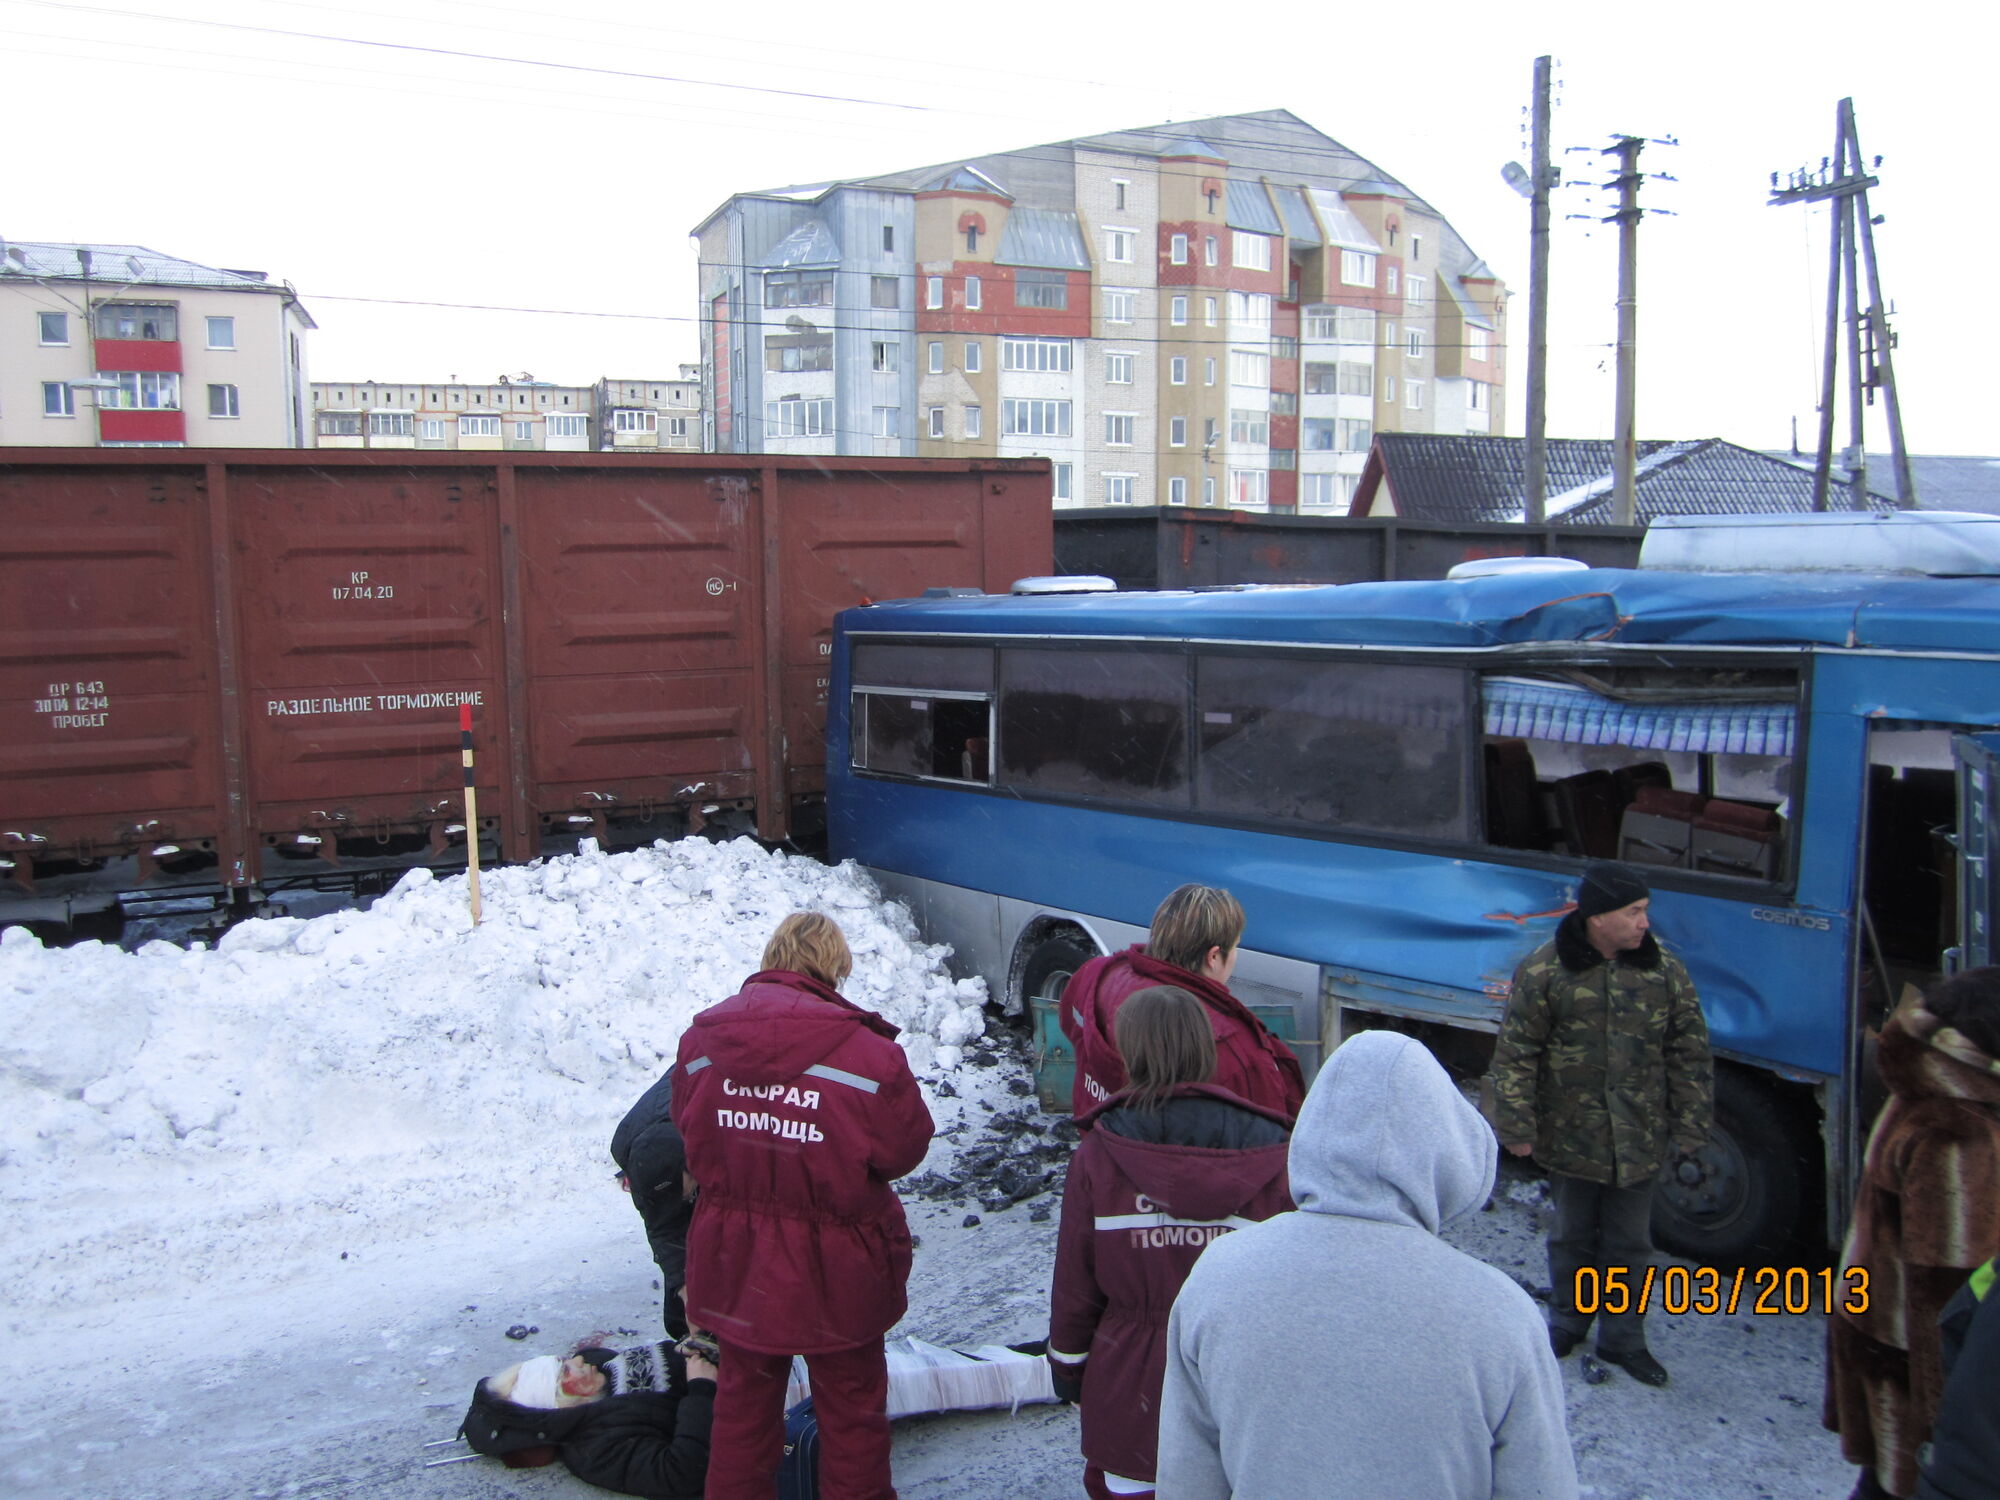 Автобус зіткнувся з локомотивом на Сахаліні: є постраждалі